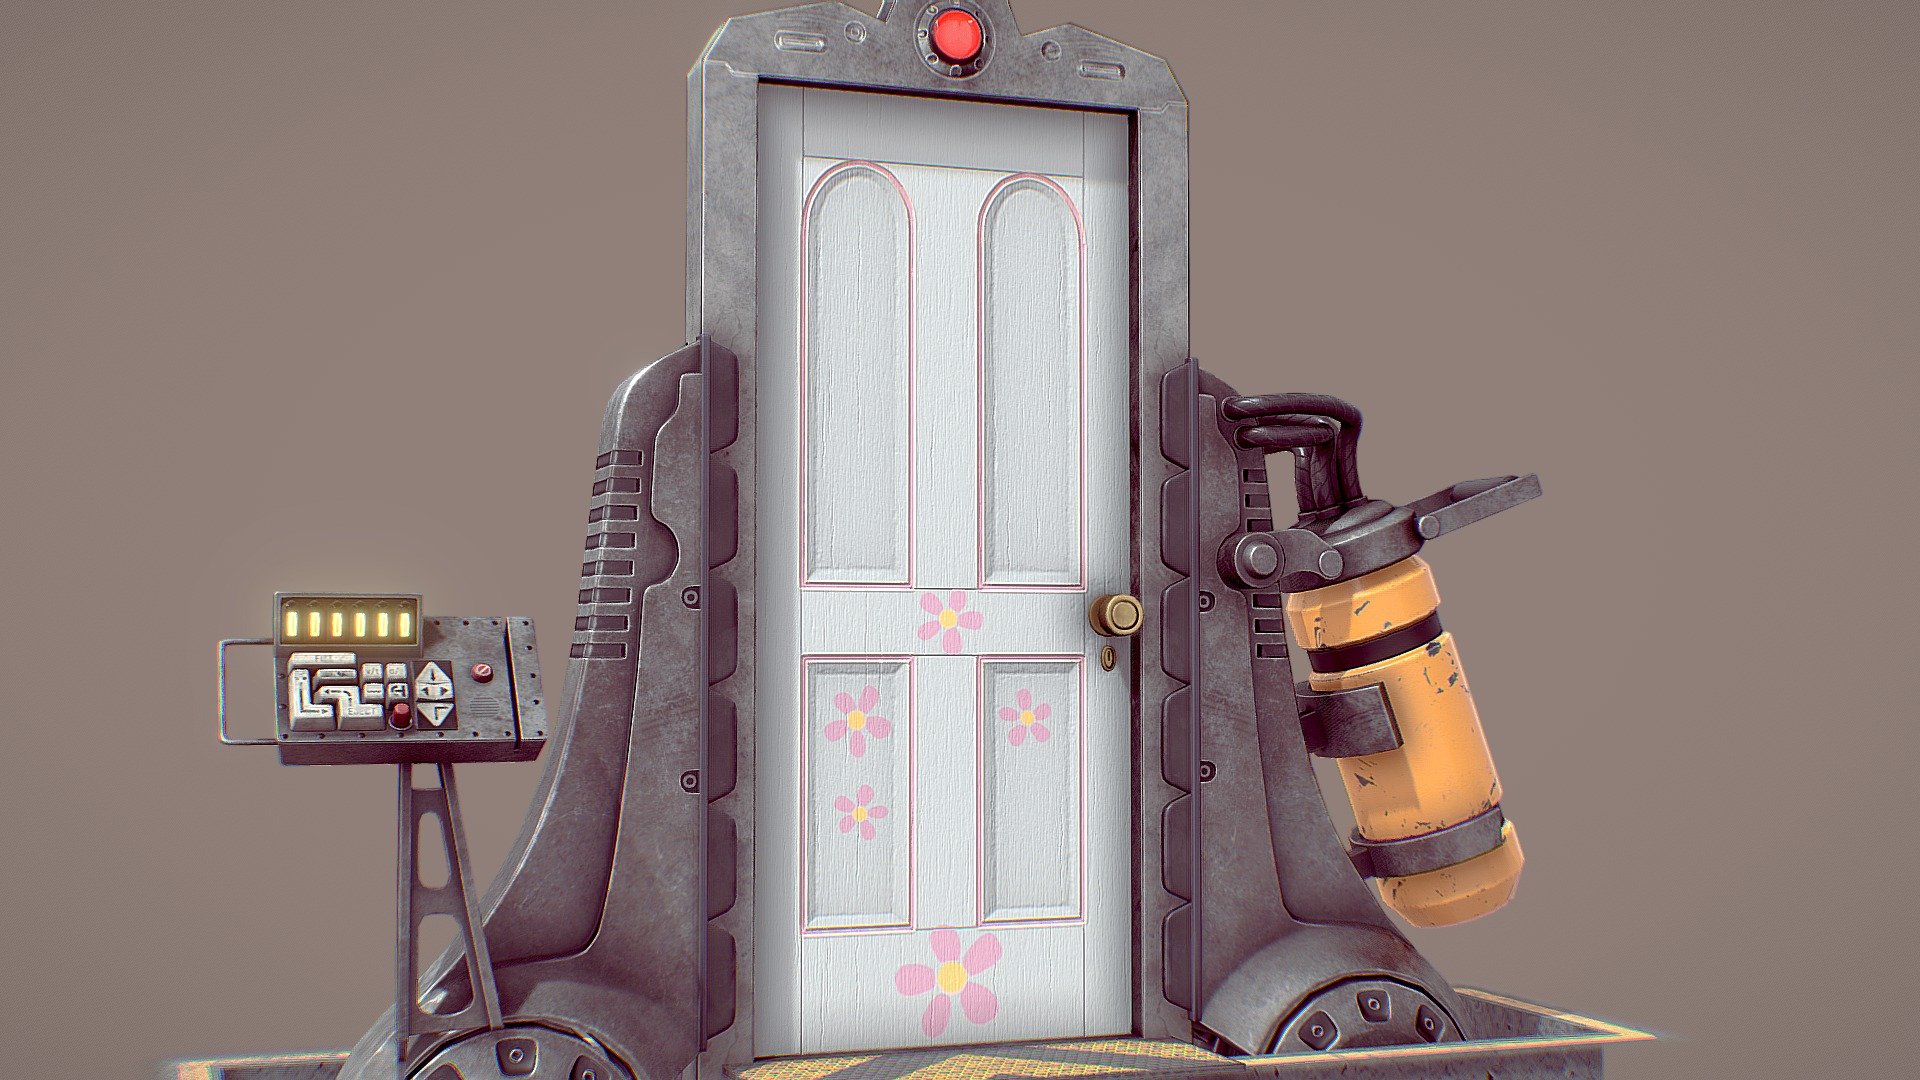 Monsters Inc Doors Printable: Unlock the Door to Fun with Free ...